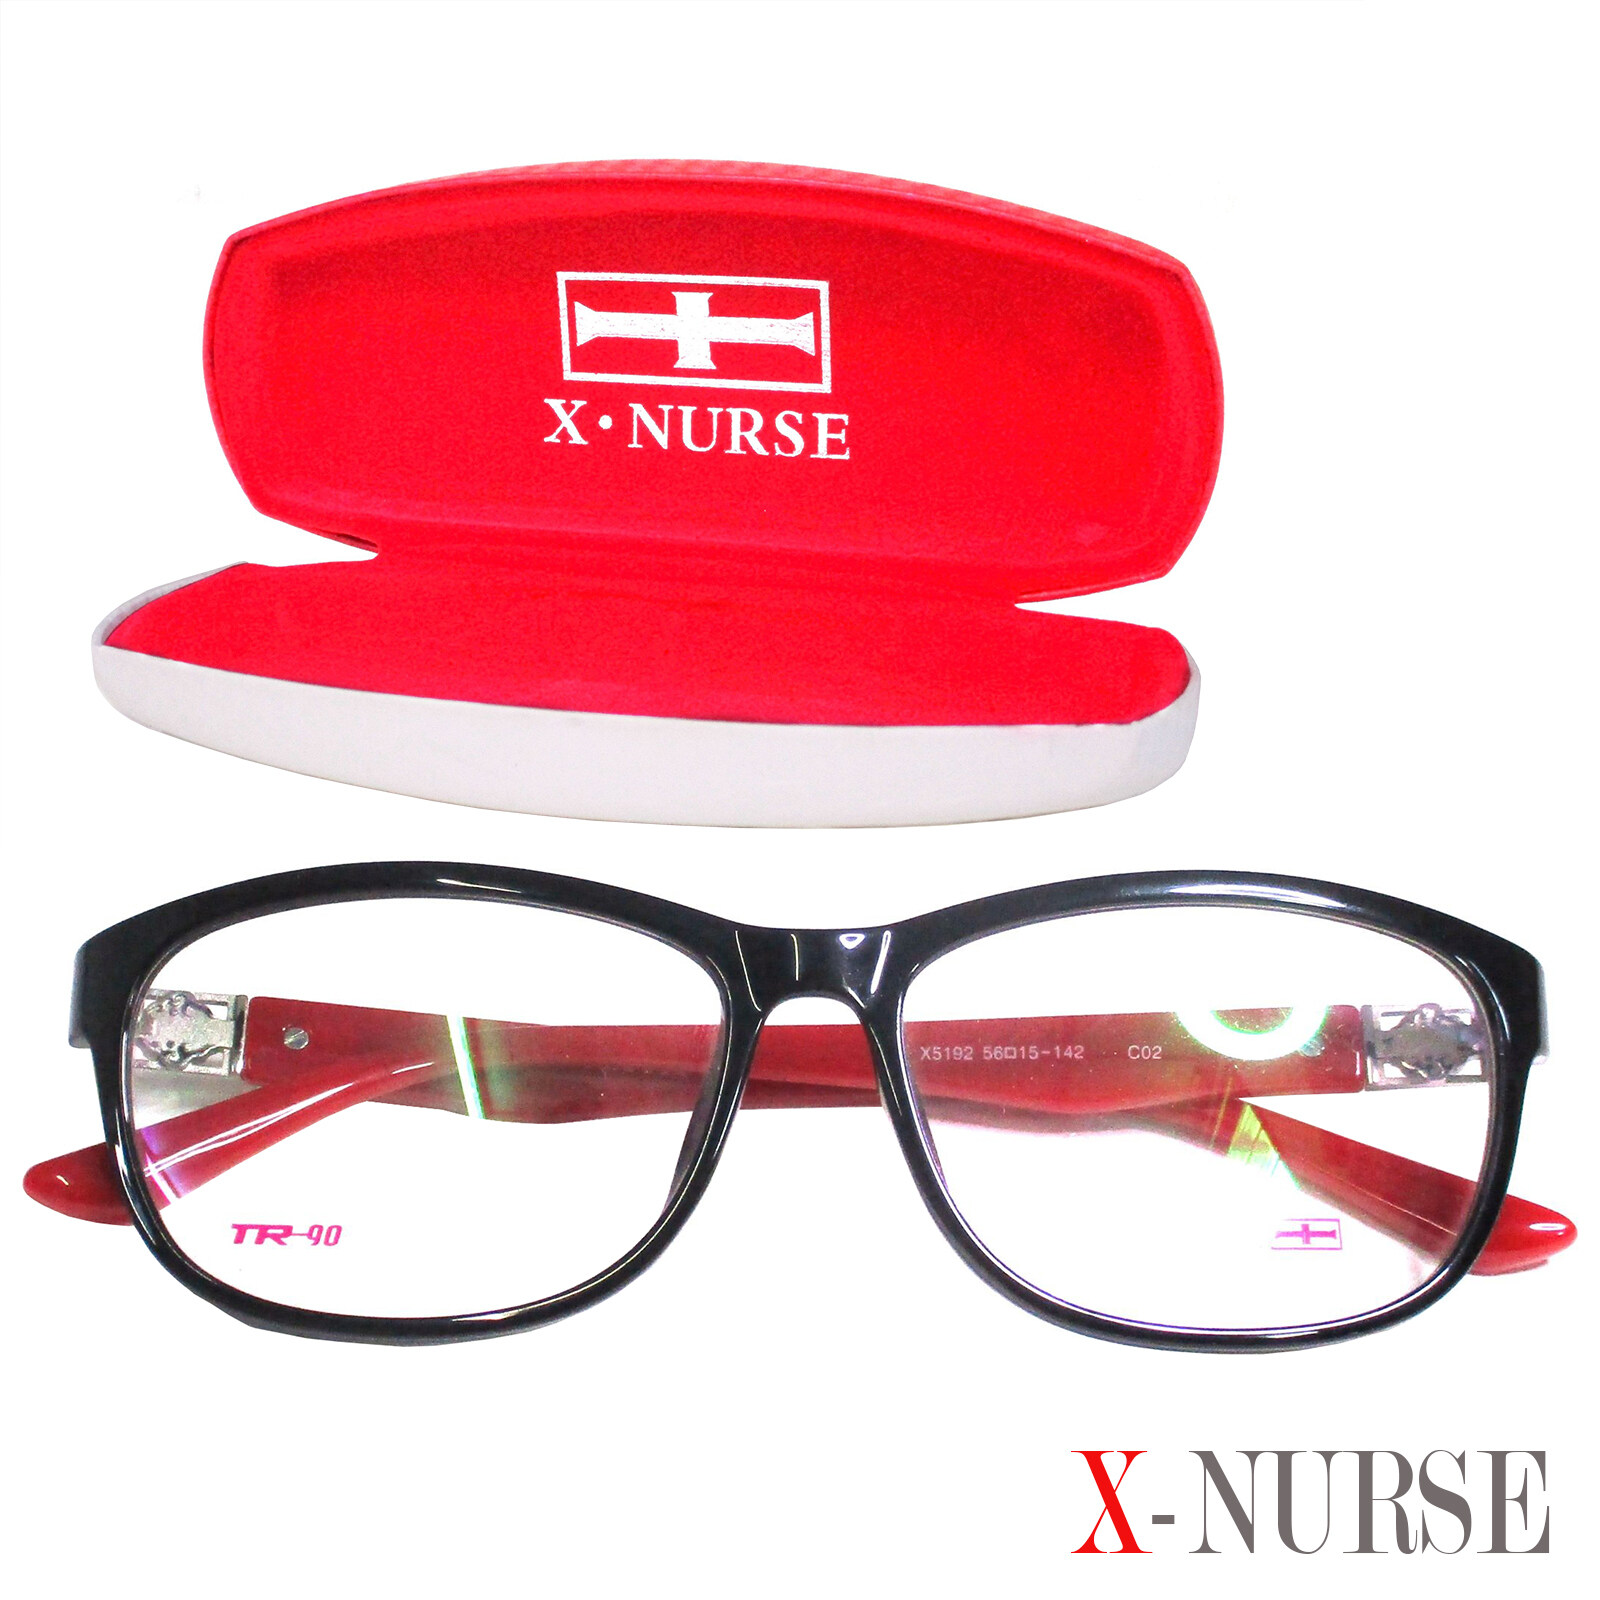 กรอบแว่นตา แว่นตาสำหรับตัดเลนส์ ผู้ชาย ผู้หญิง Fashion รุ่น X-Nurse 5192 C-2 สีดำขาแดง ทรงรี ขาข้อต่อ วัสดุ พลาสติก พีซี เกรด เอ รับตัดเลนส์สายตาเลนส์กันแดดทุกชนิด